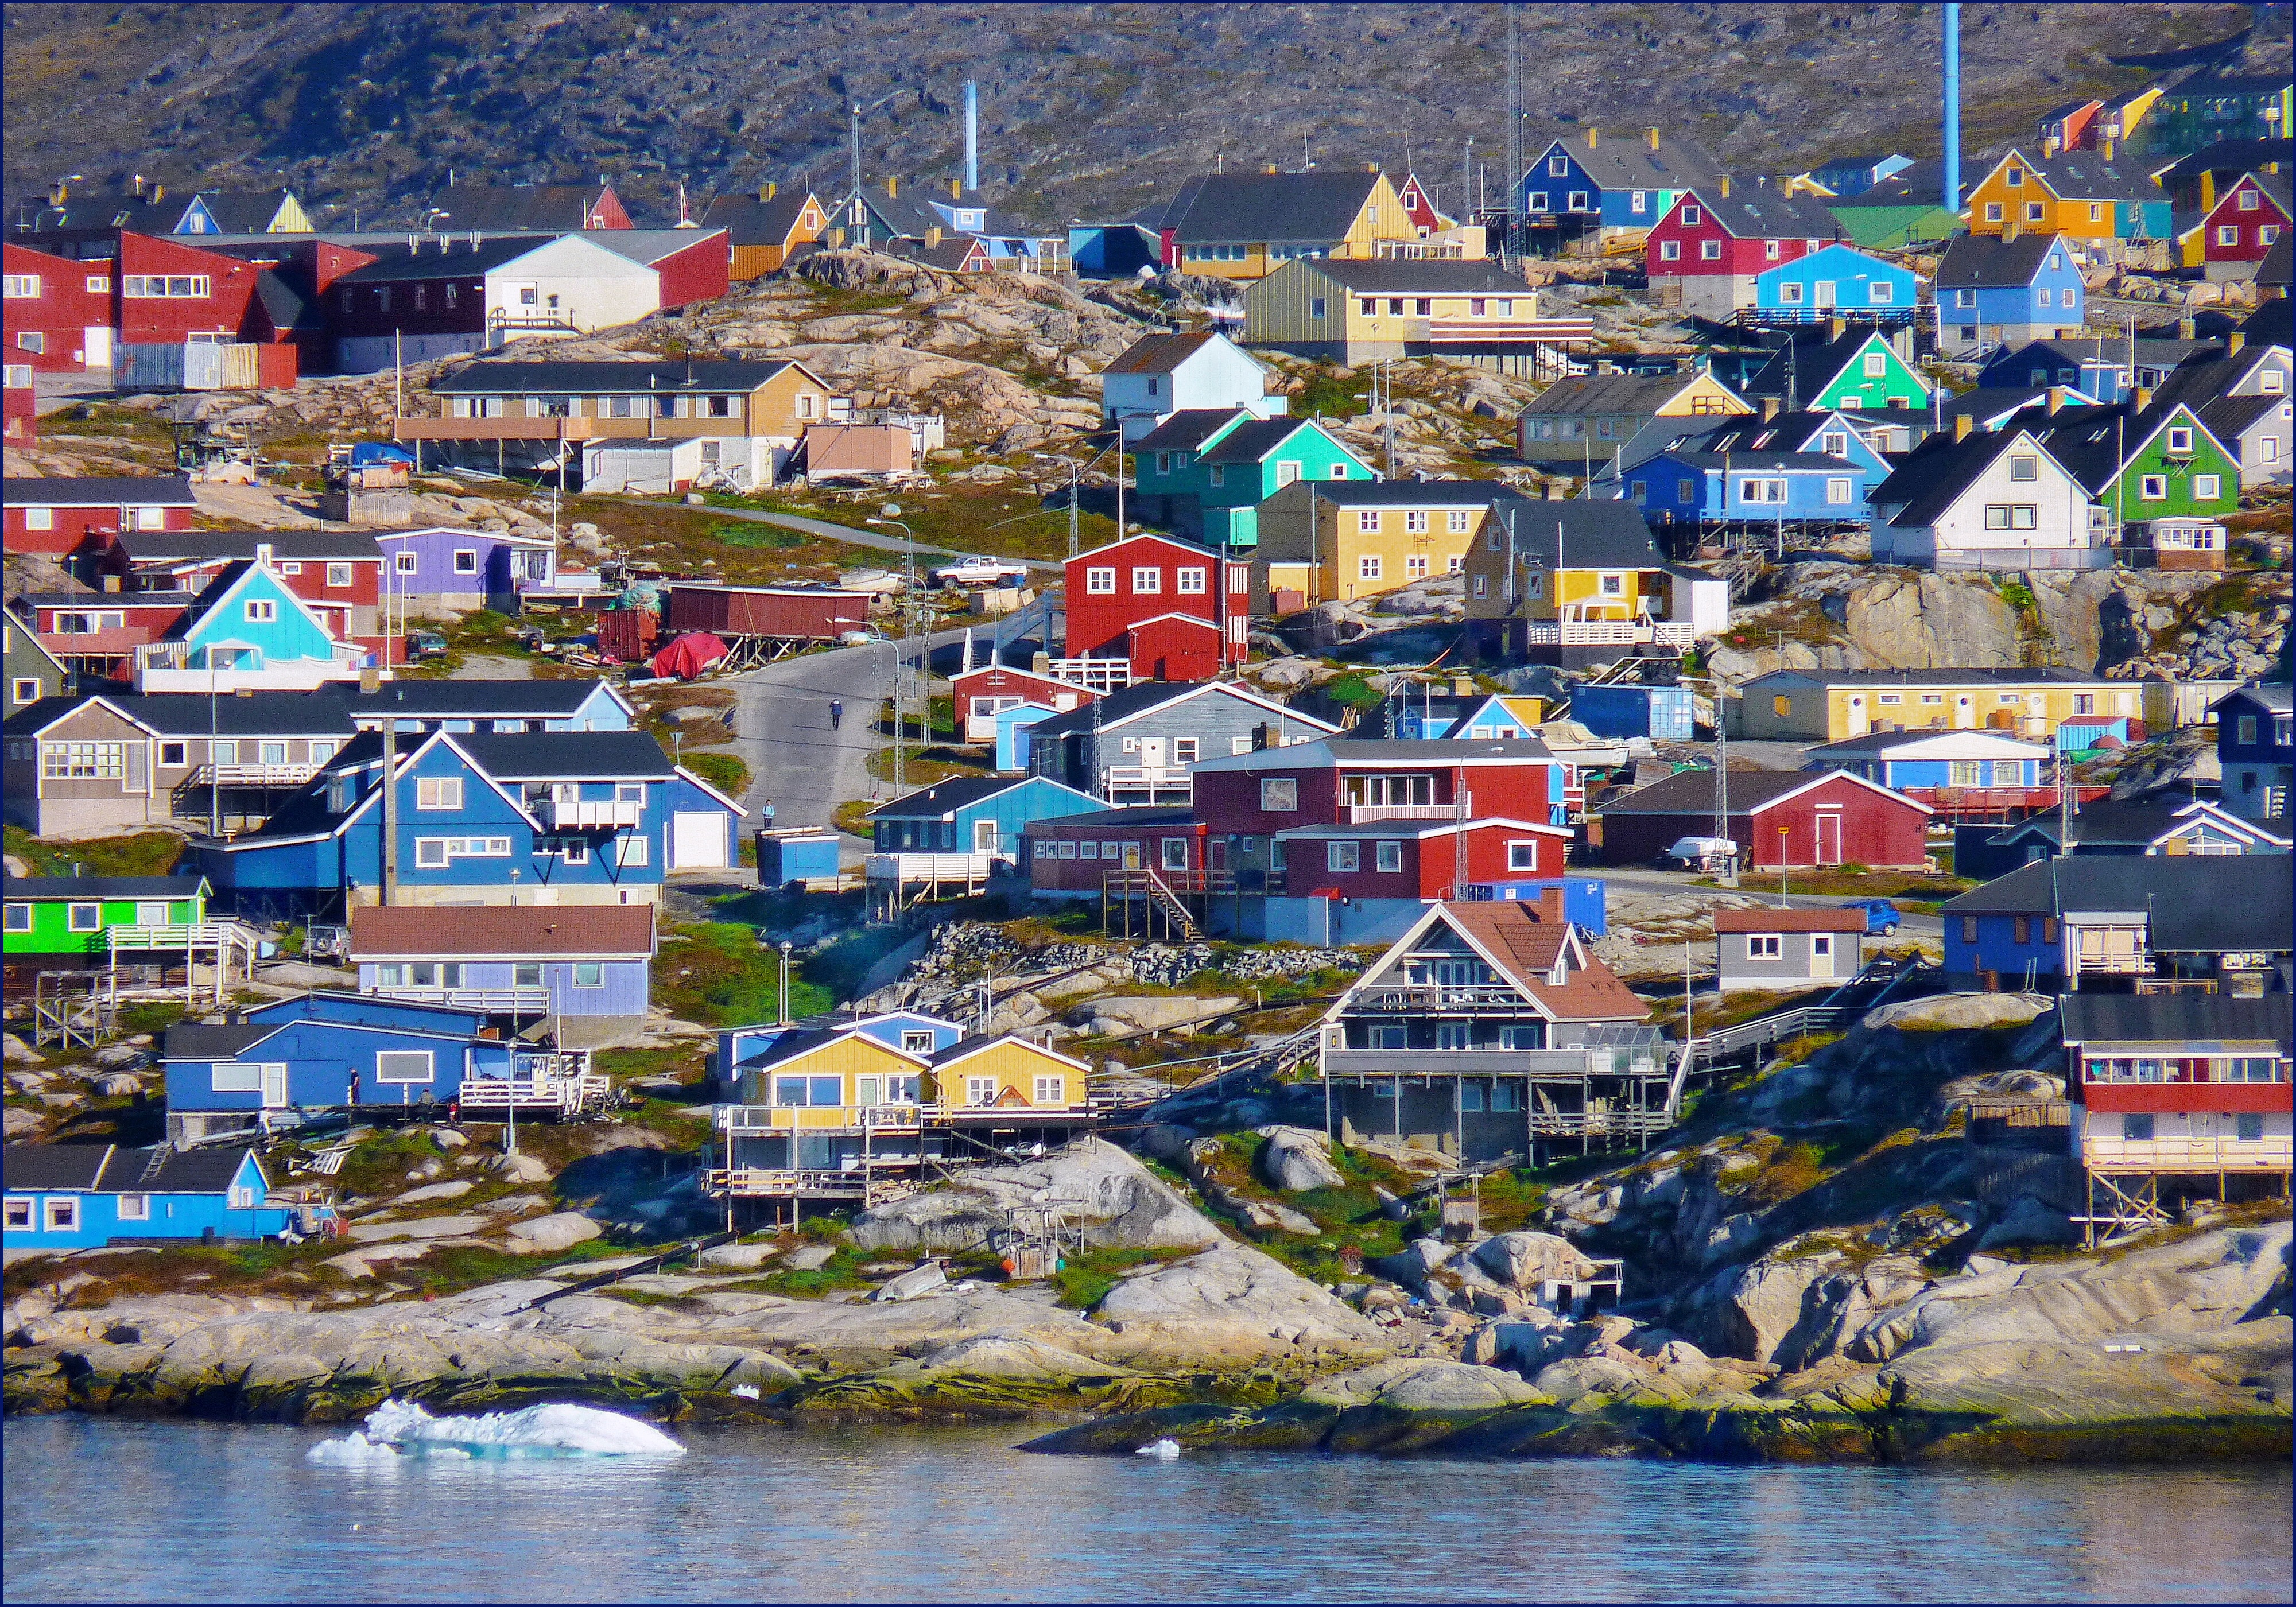 96 sarkkörkutató állítja egybehangzóan, hogy Grönland jege katasztrofális mértékben olvad